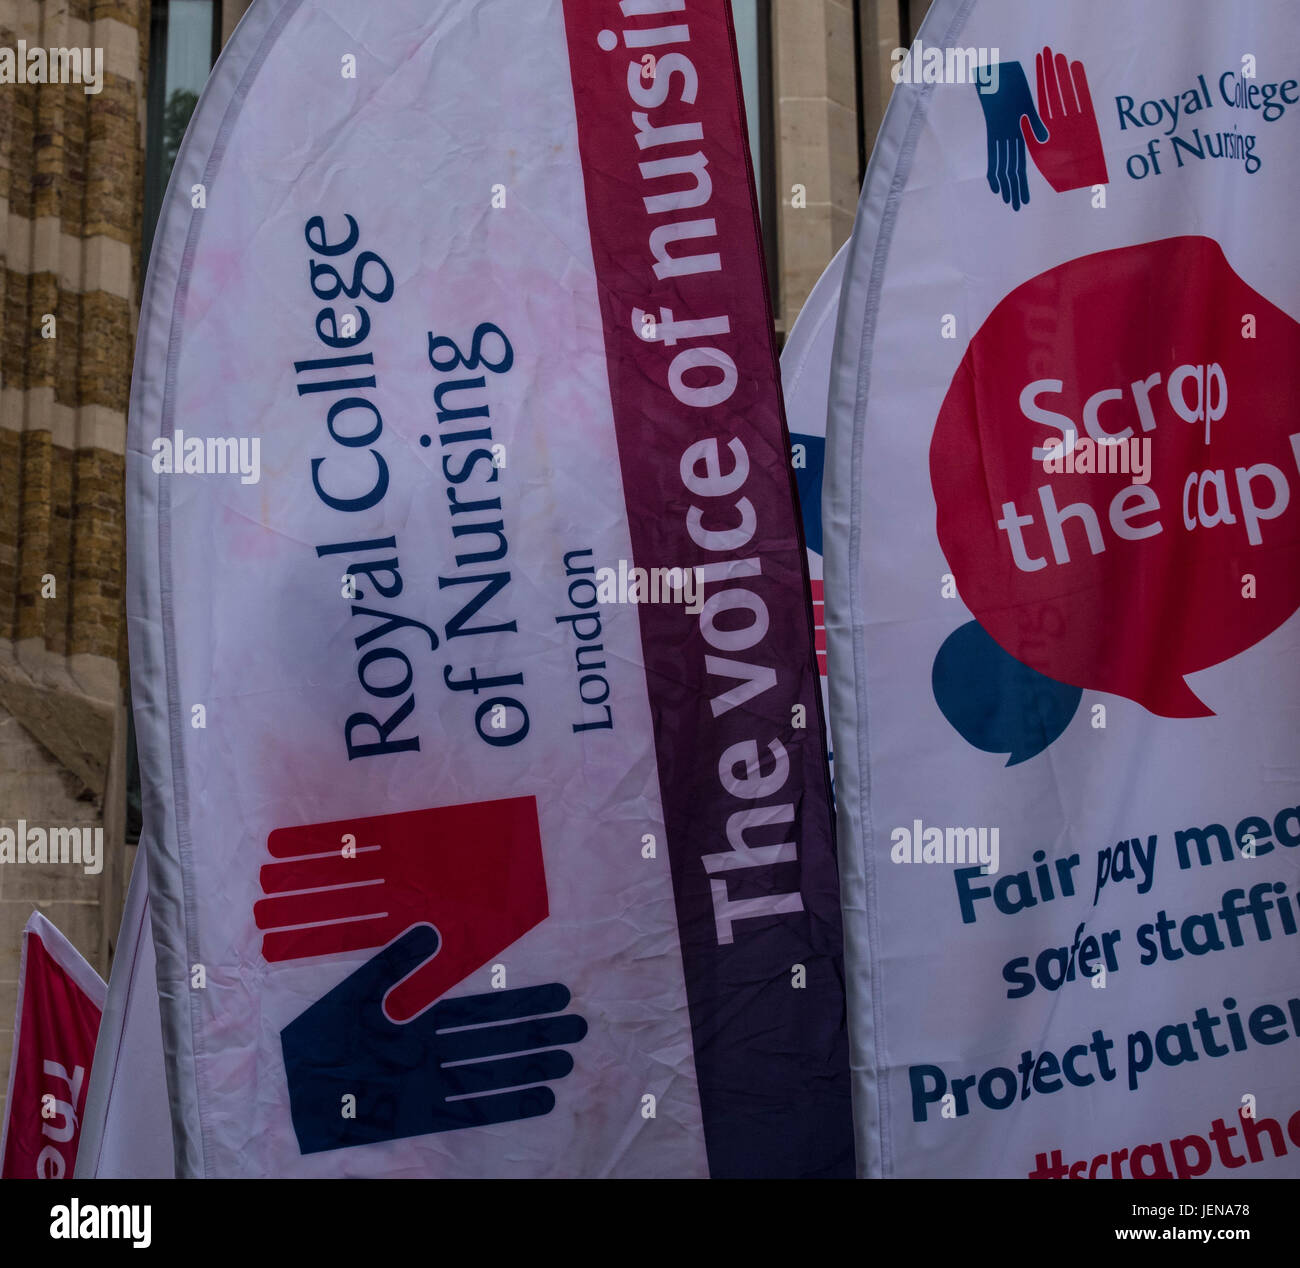 Londres, 27 de junio de 2017, el Royal College of Nursing miembros fuera del Departamento de Salud, Londres, lanzan una campaña contra el 1% paga la tapa con una protesta por frontline nursesCredit: Ian Davidson/Alamy Live News Foto de stock